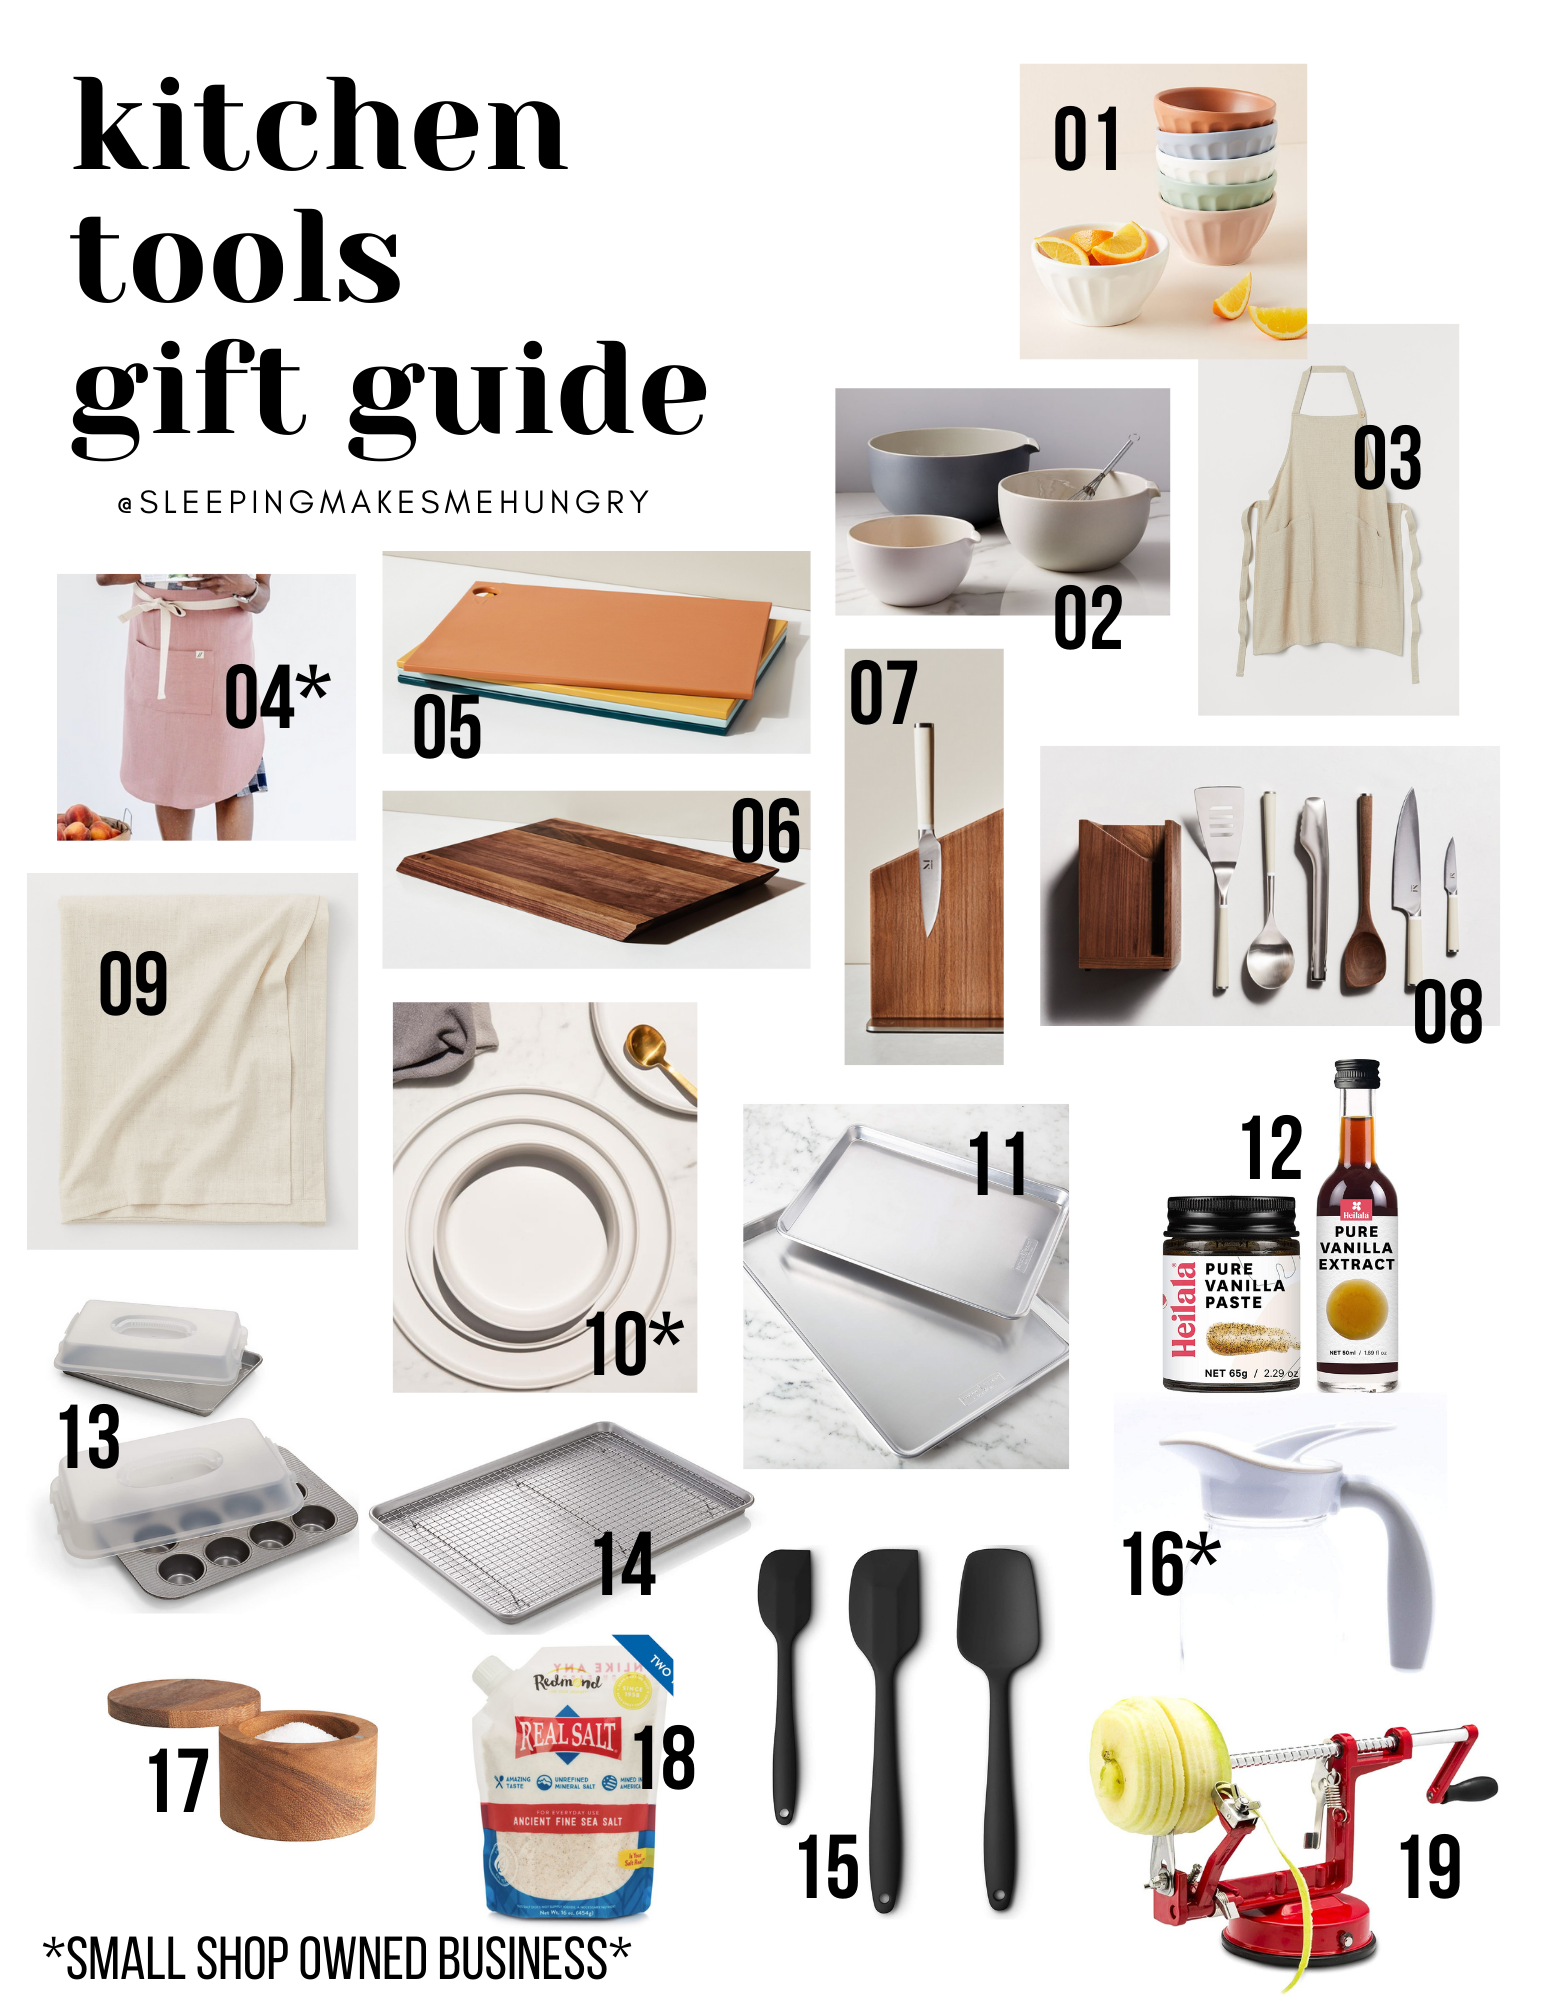 Gift Guide: 15 Kitchen Essentials